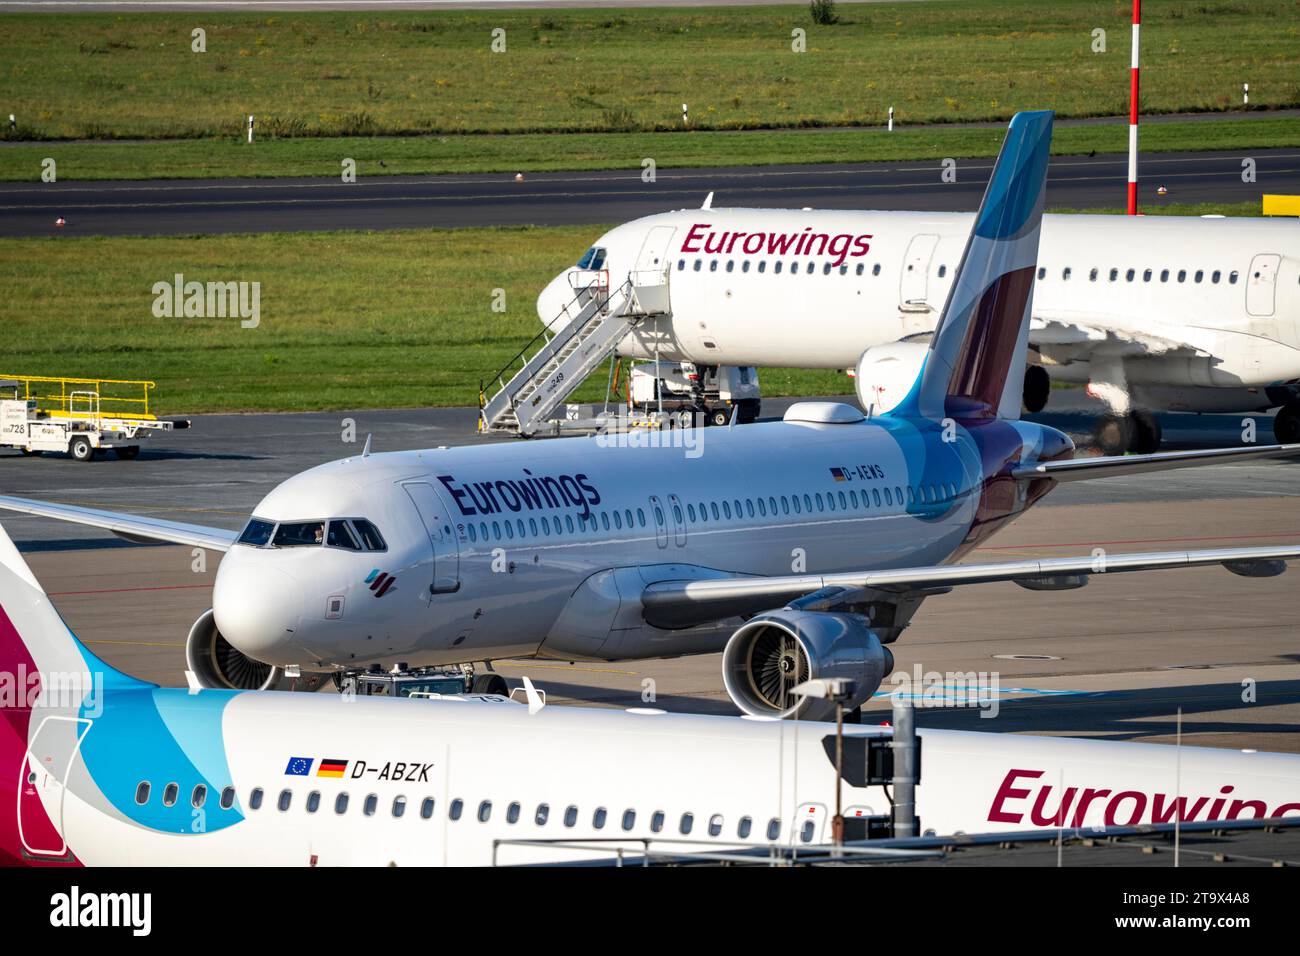 Aeroporto di Düsseldorf, aeromobili Eurowings, Airbus, posti di parcheggio, pista di rullaggio, Foto Stock